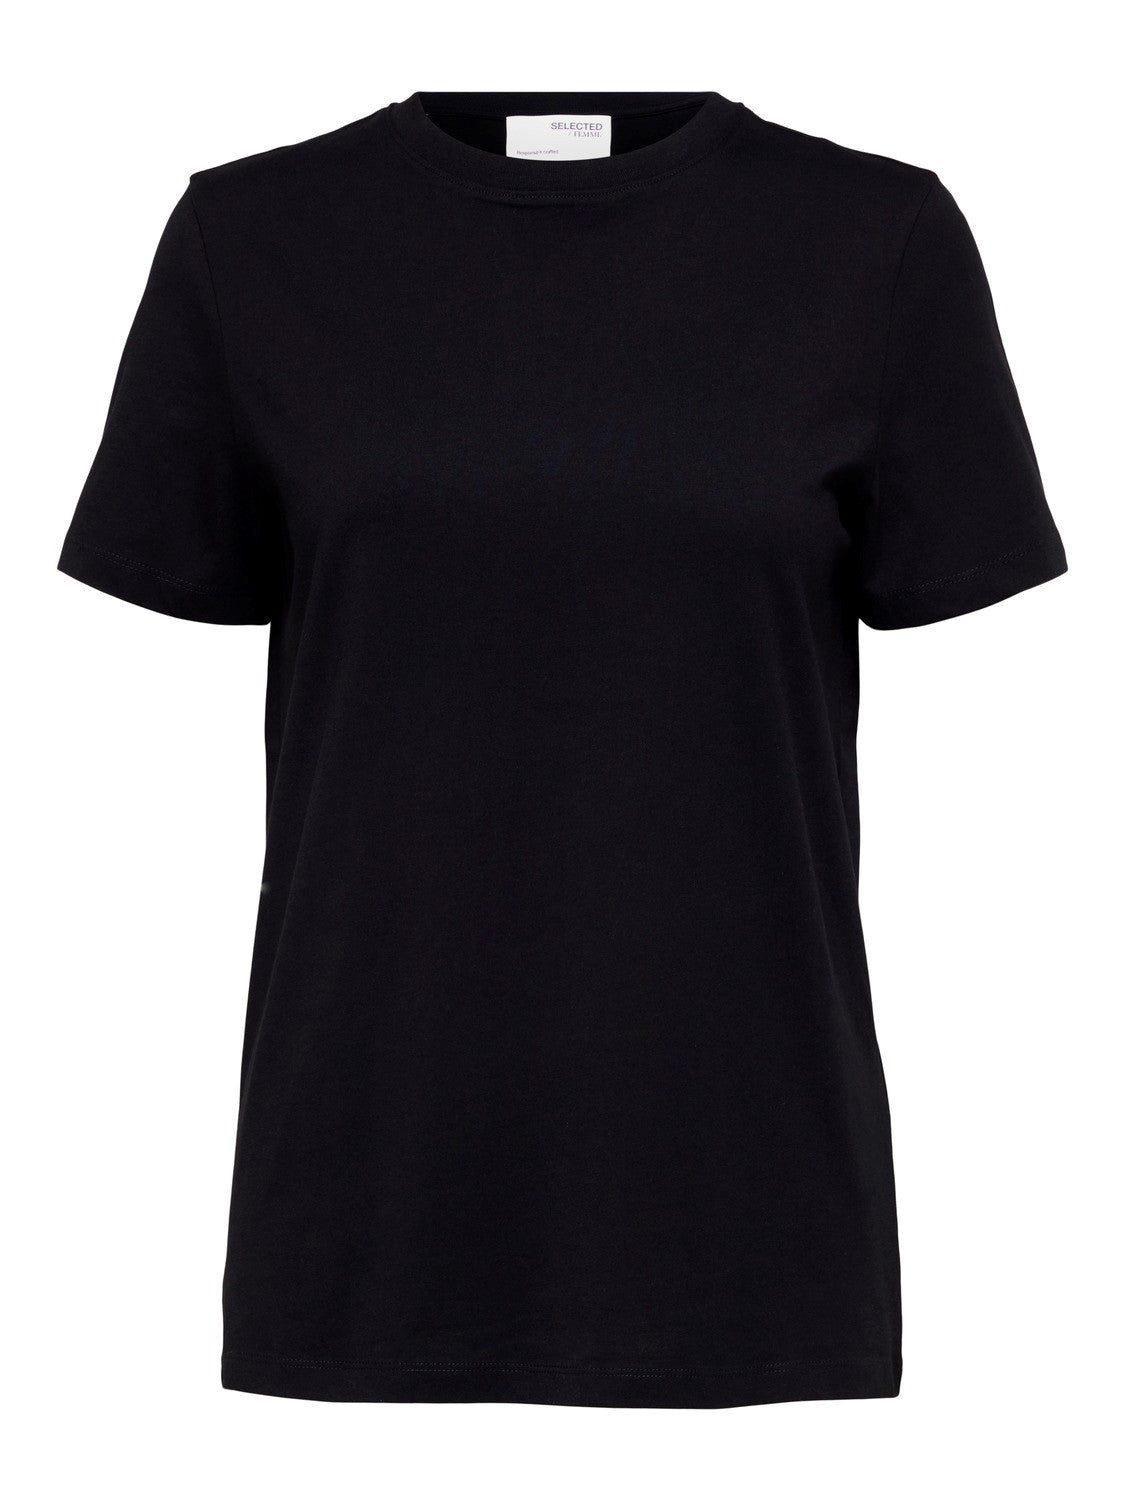 T-shirt Essential o-neck, black